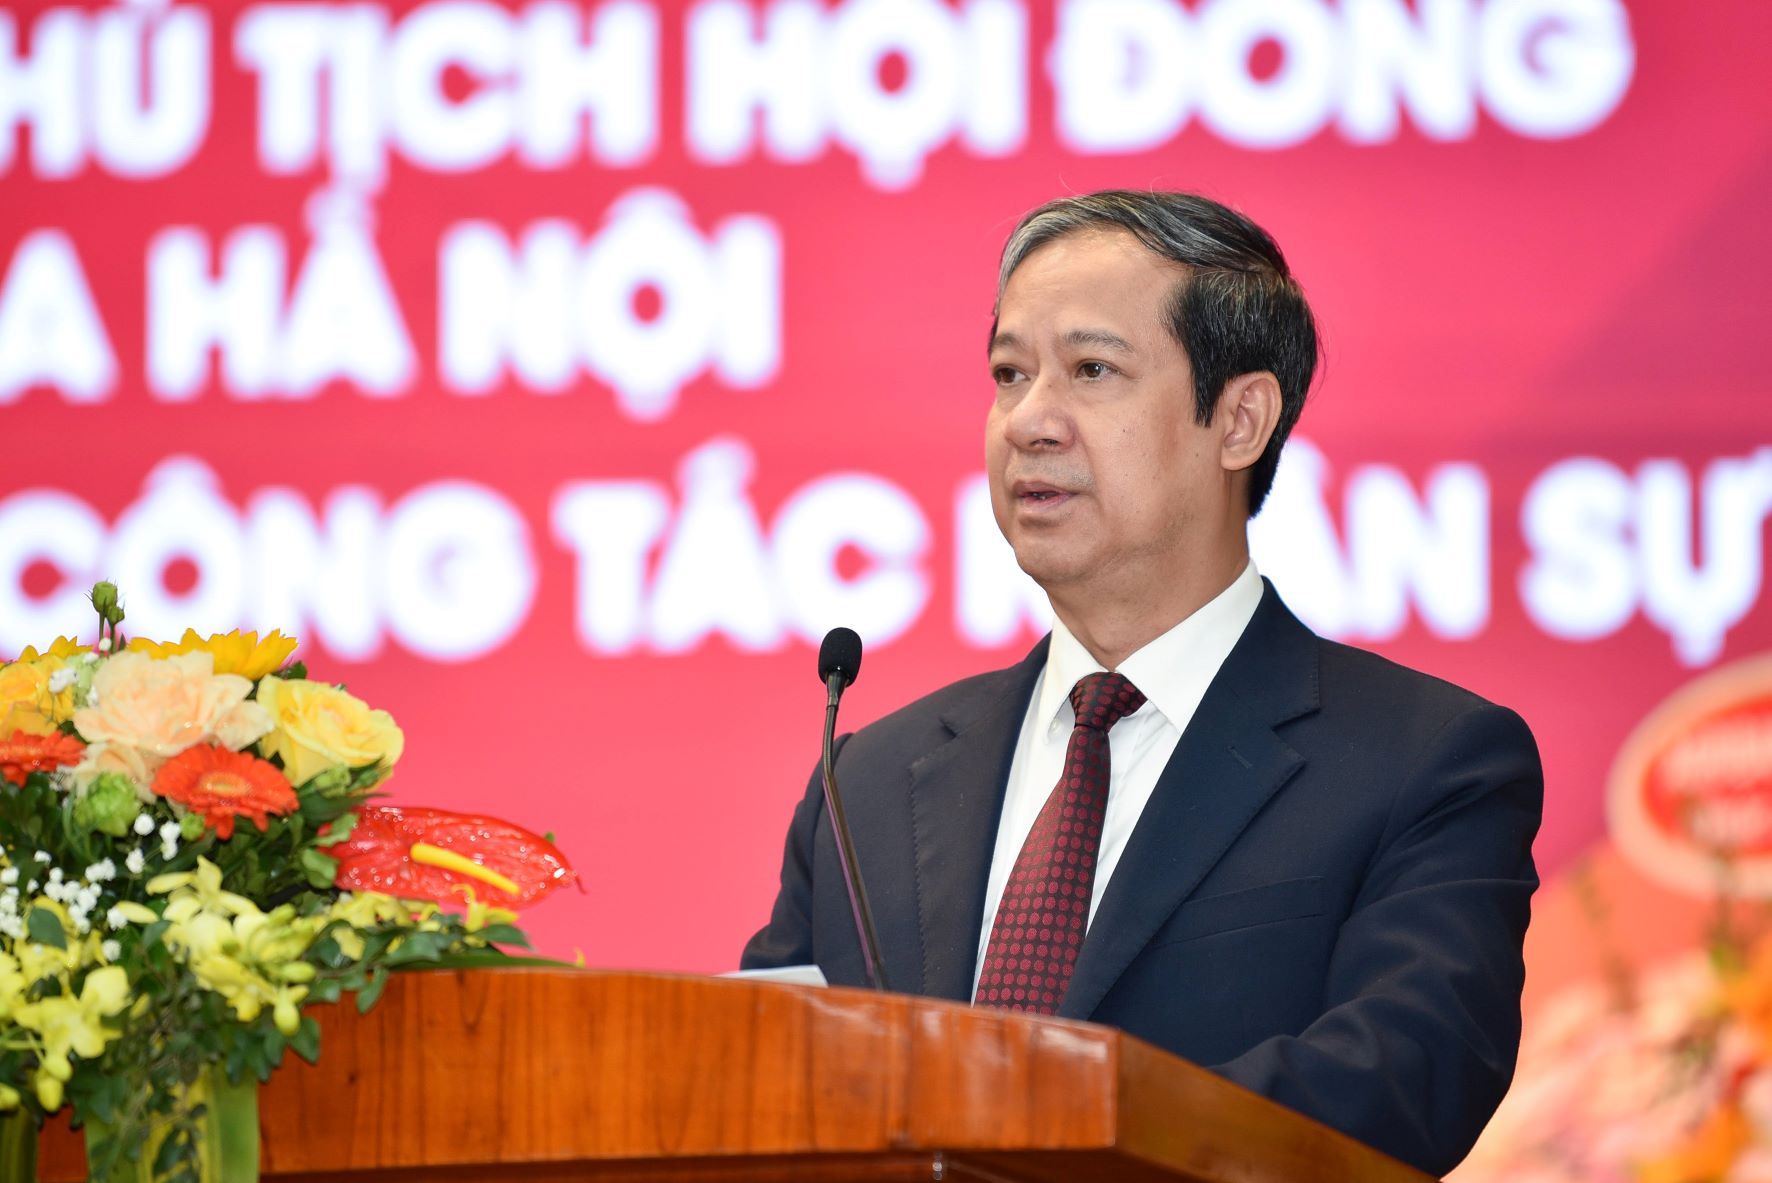 Bộ trưởng Bộ GD&ĐT Nguyễn Kim Sơn phát biểu tại Đại học Bách khoa Hà Nội sáng 17/3.